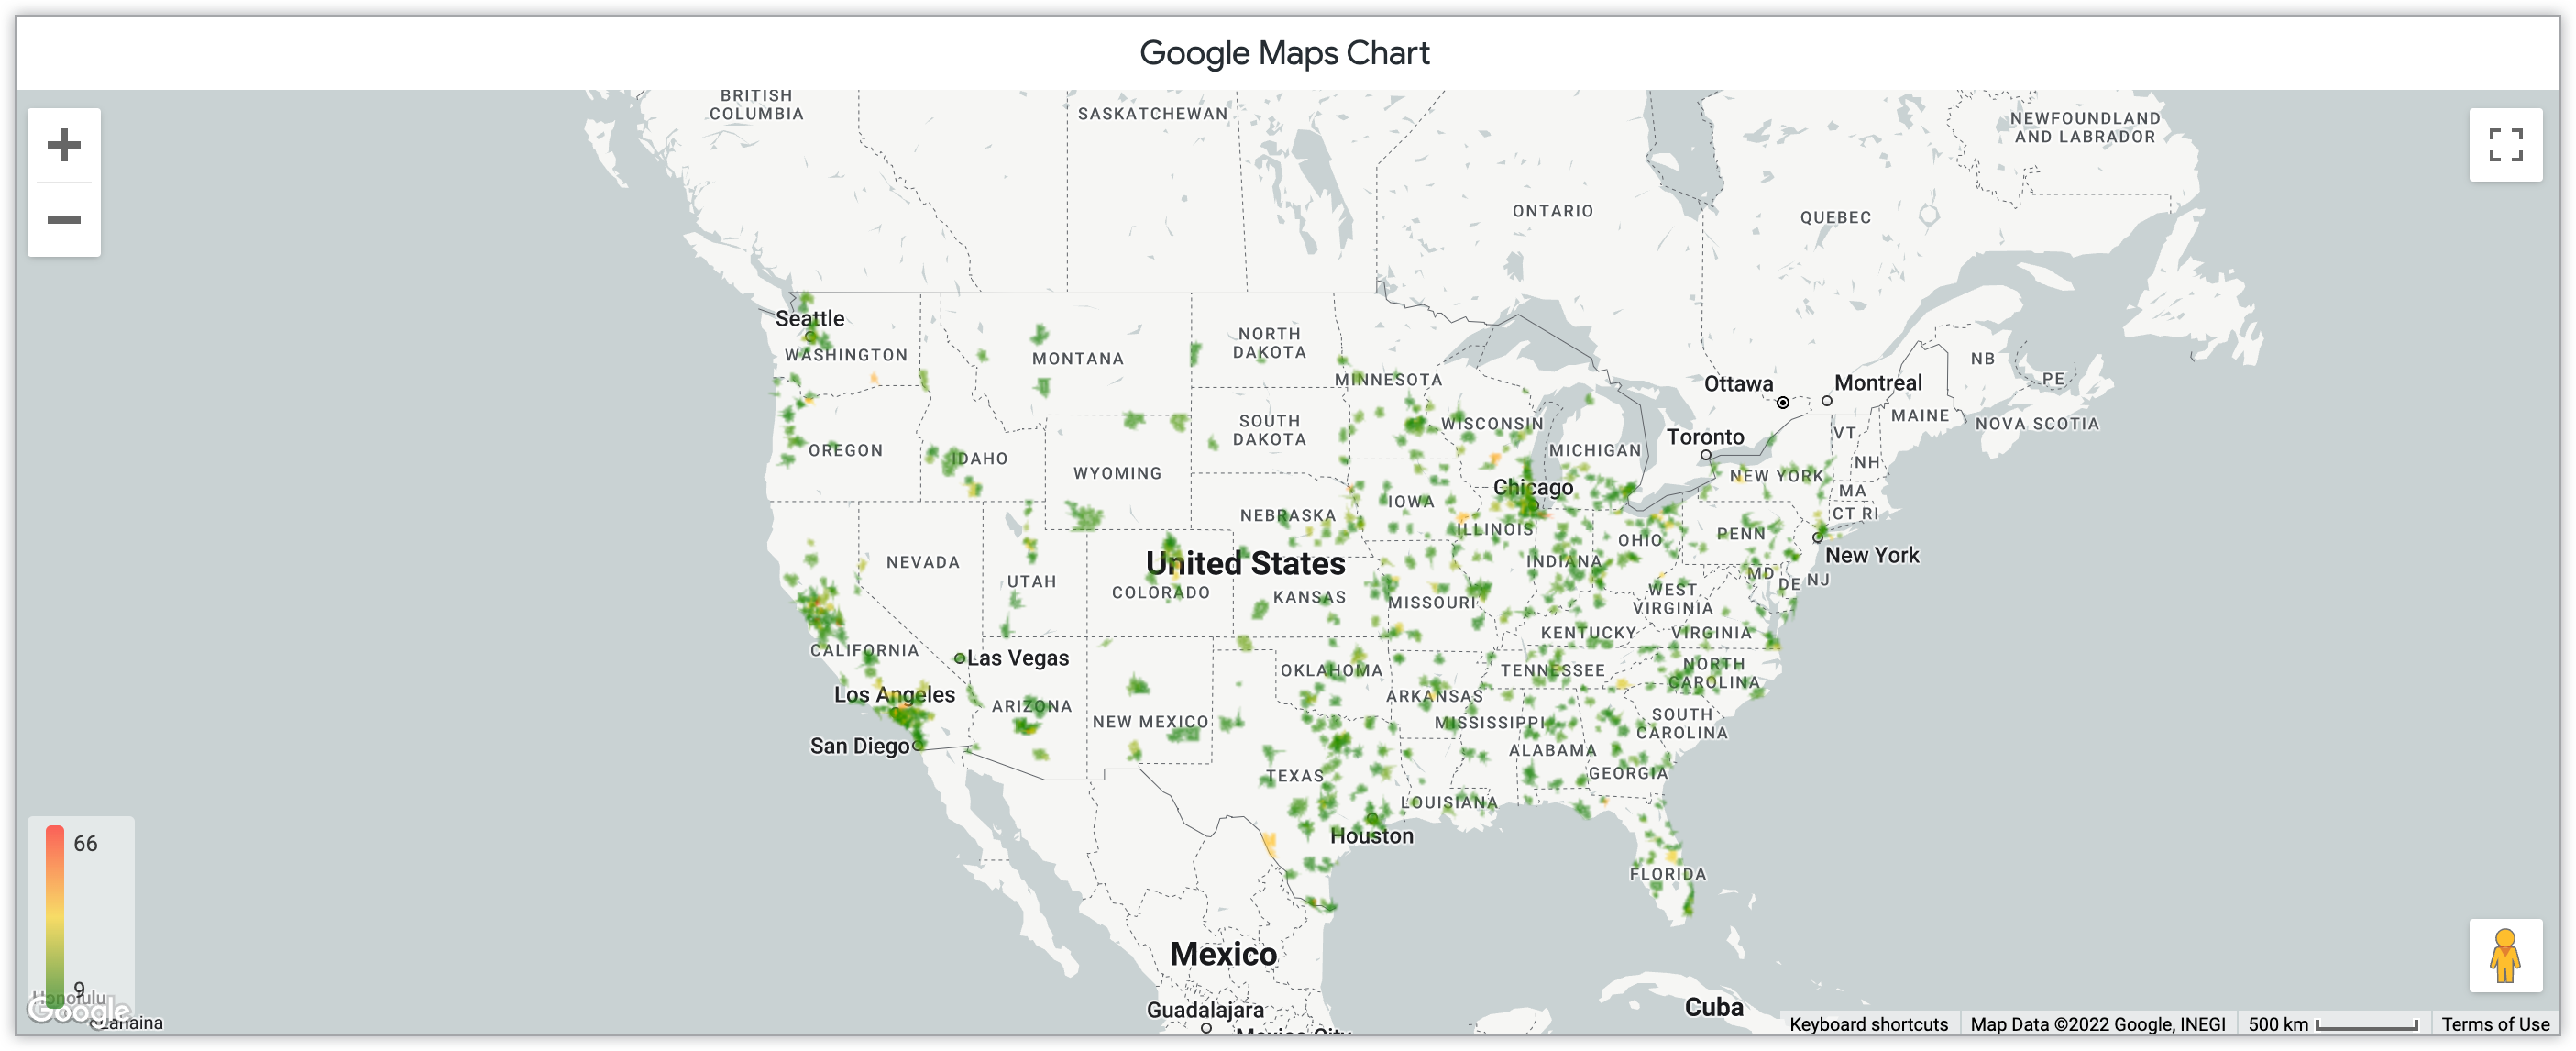 Gráfico de mapa de calor de Google Maps en el que se muestra la cantidad de productos vendidos por mes en códigos postales de Estados Unidos.